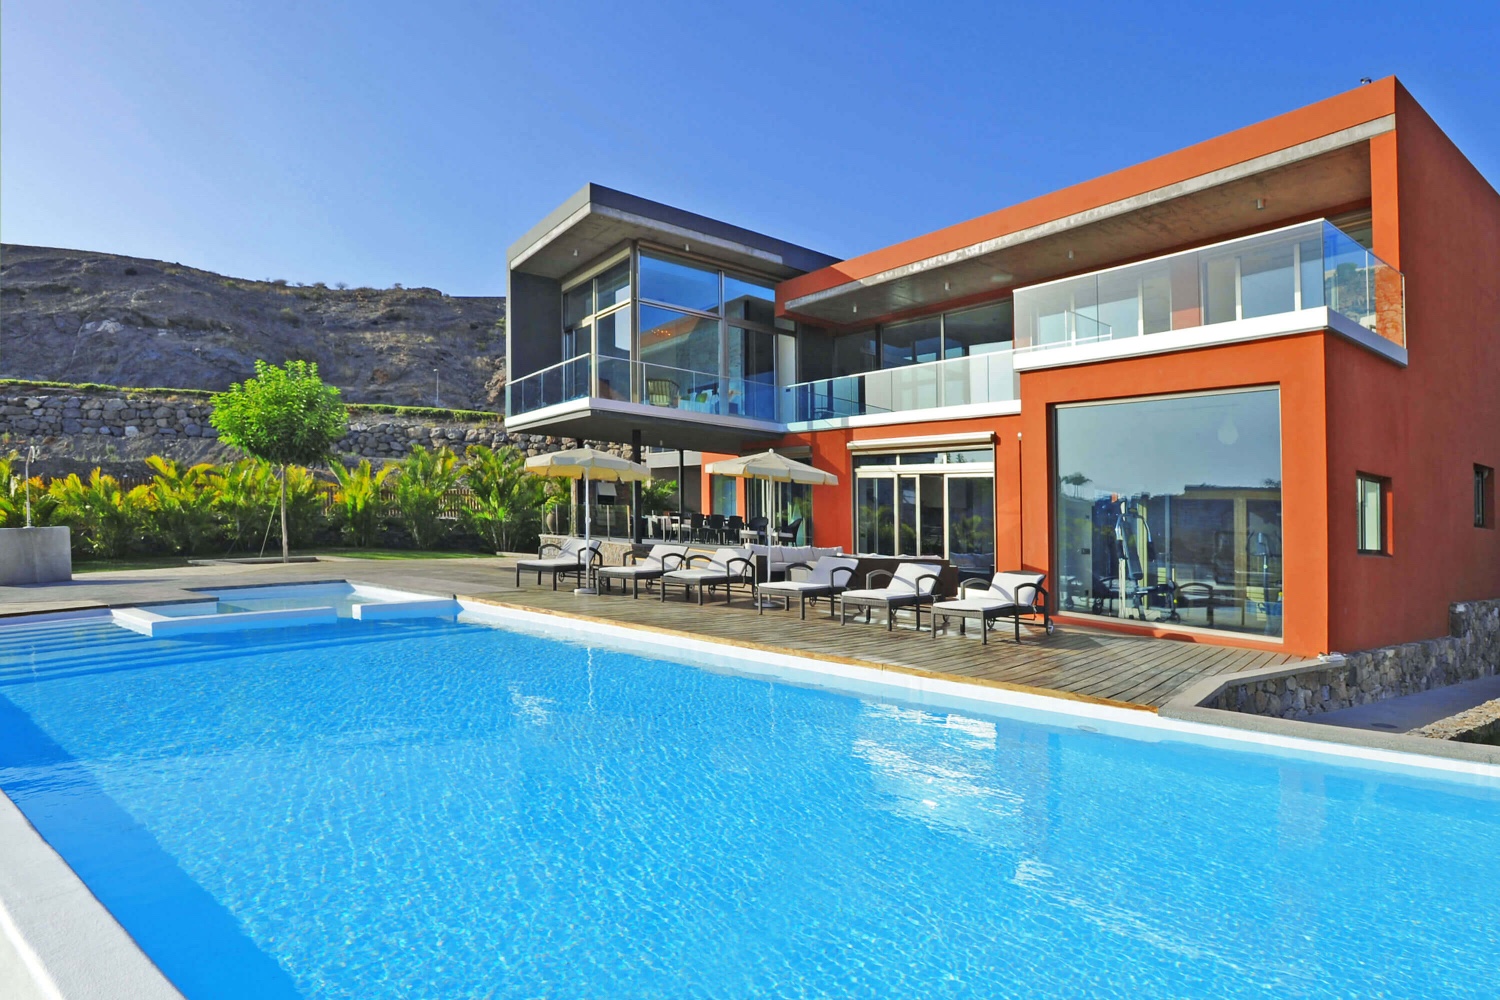 Velkolepá luxusní vila se 4 ložnicemi v první linii na golfovém hřišti s prostorným interiérem, posilovny, sauny a bazénu